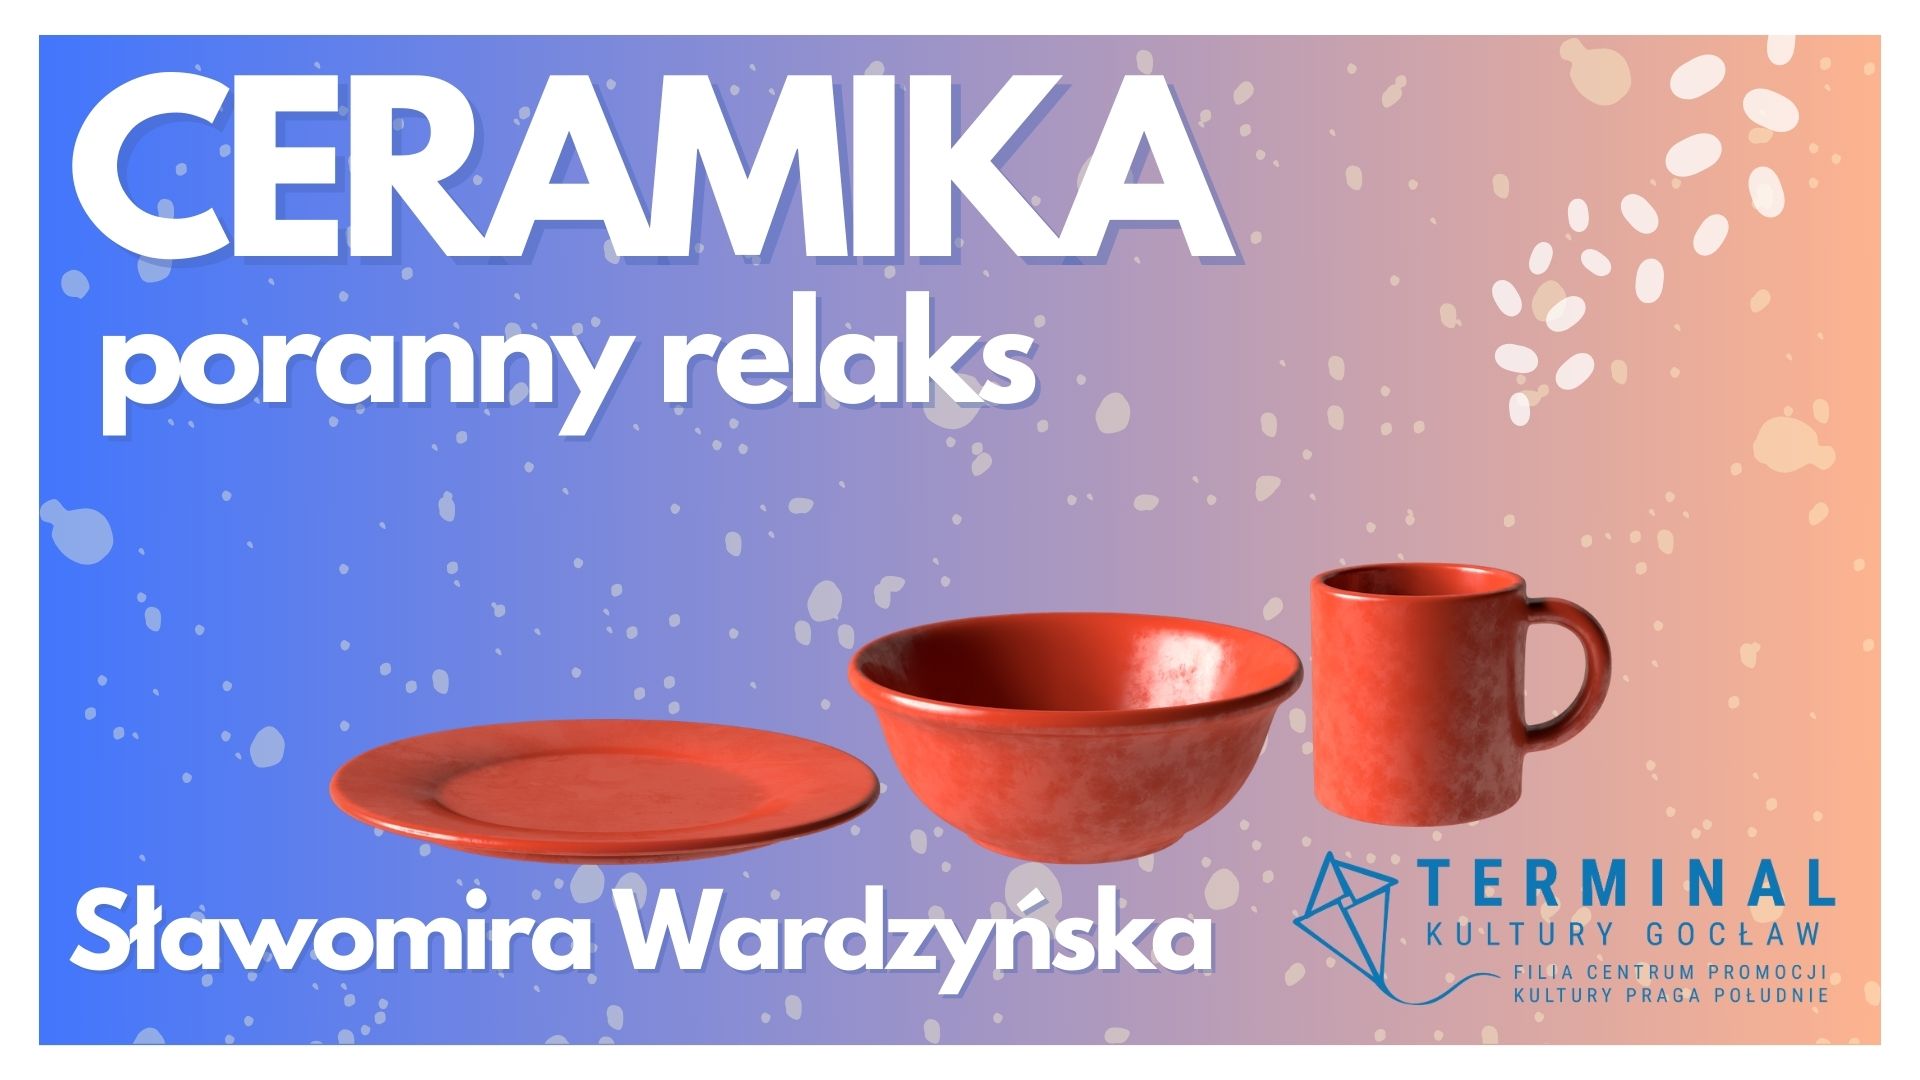 Ceramika Poranny Relaks Sławomira Wardzyńska